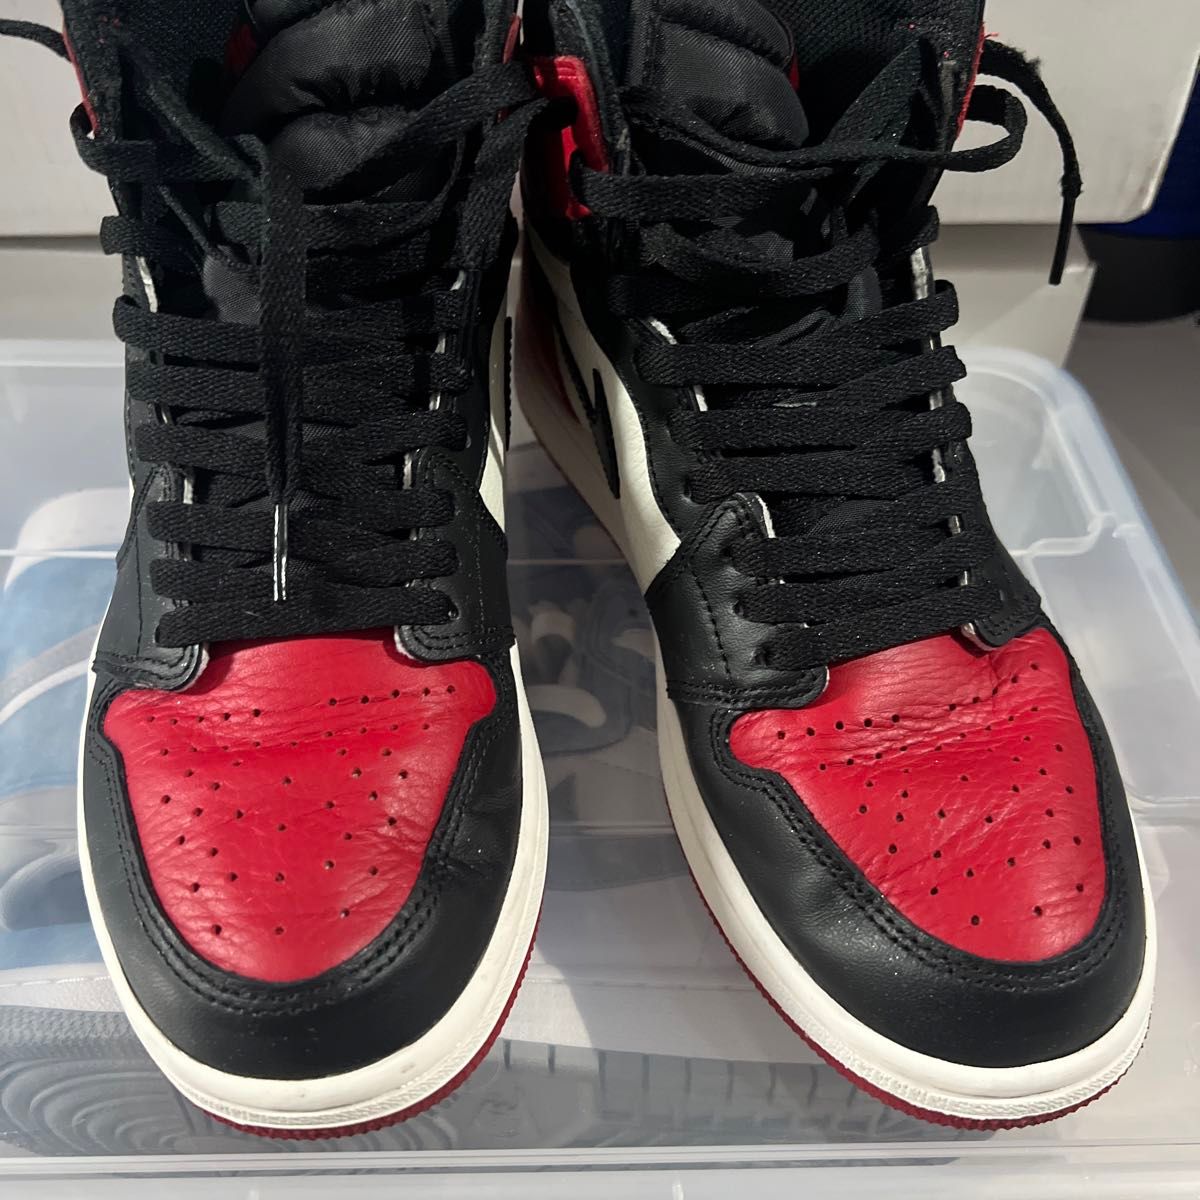 Nike Air Jordan1 Retro High OG "Bred Toe